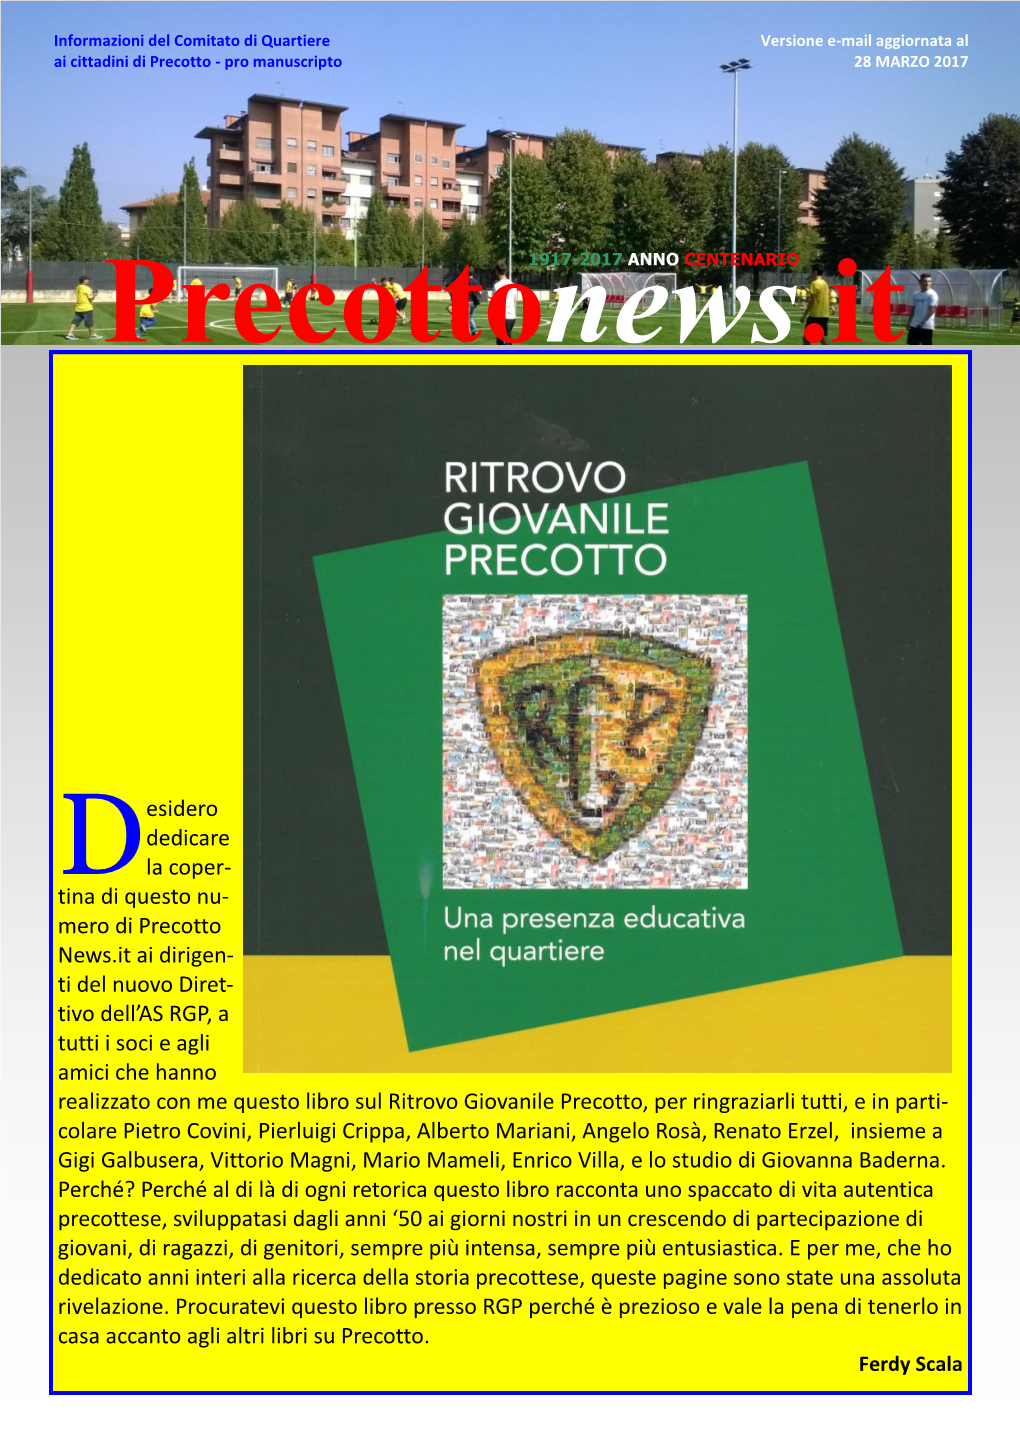 Mero Di Precotto News.It Ai Dirigen